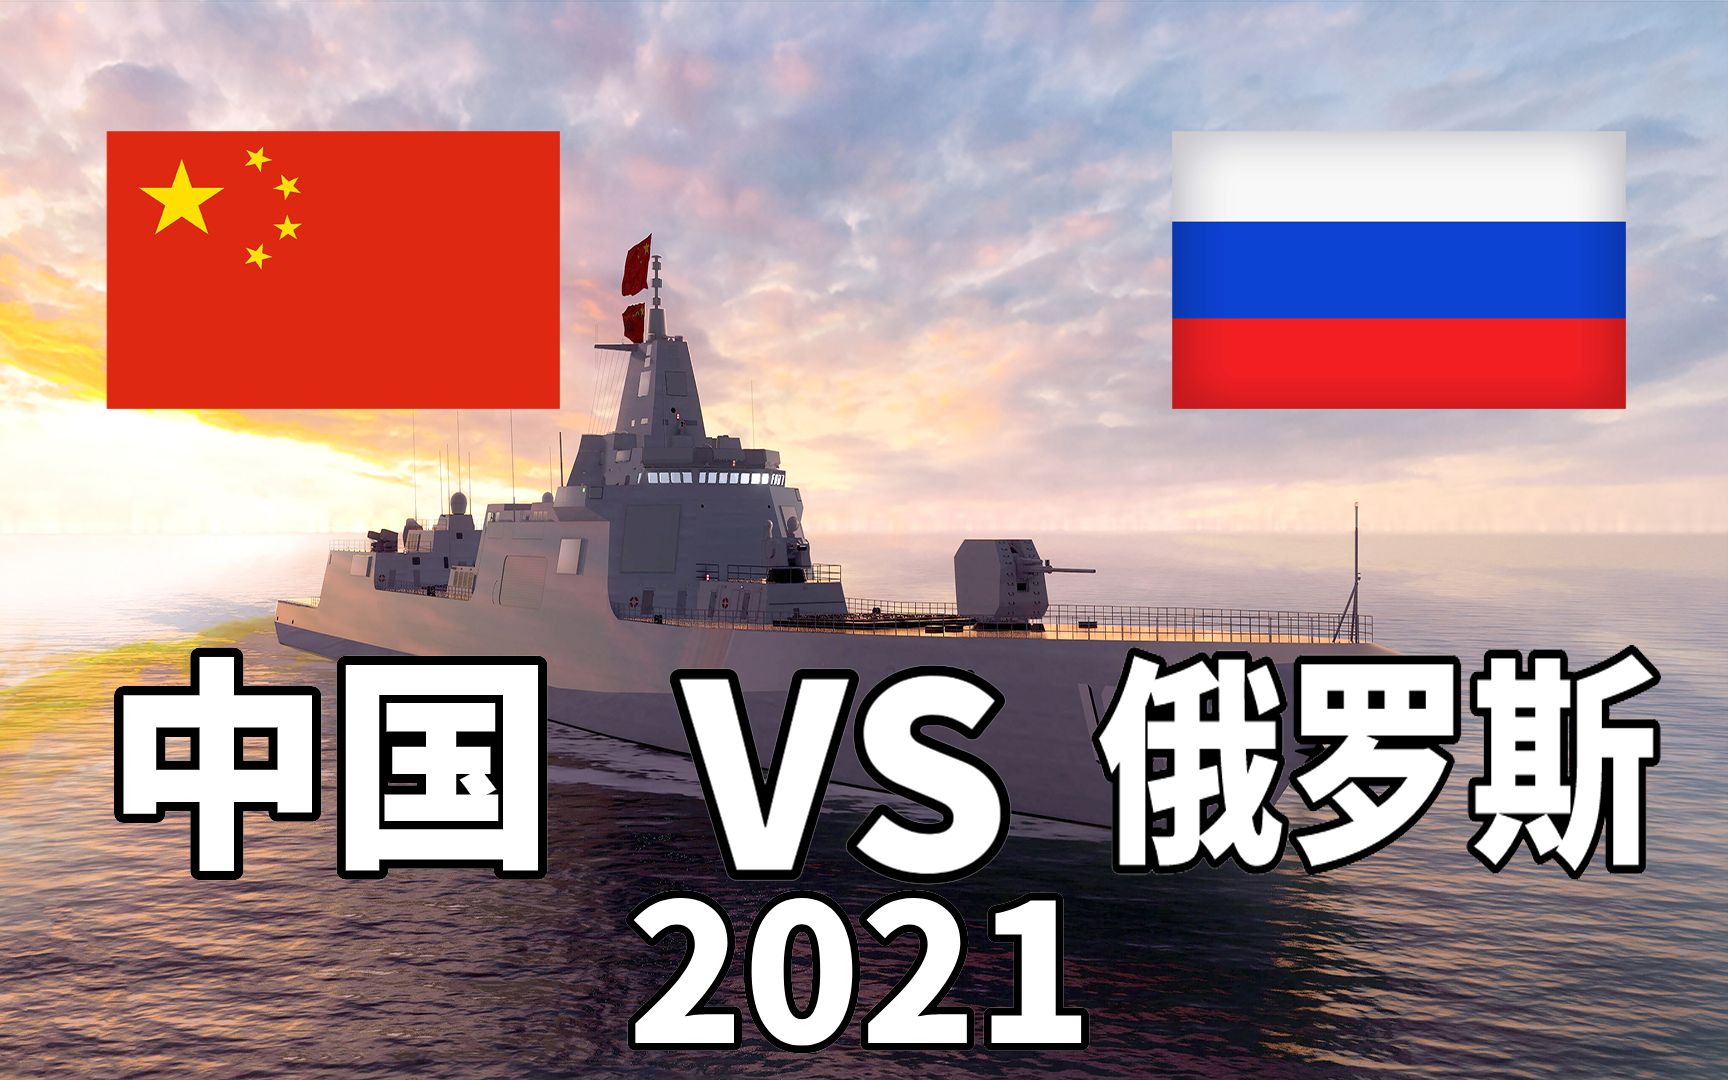 2021年中国vs俄罗斯军事实力对比,比一比才知道差距有多少